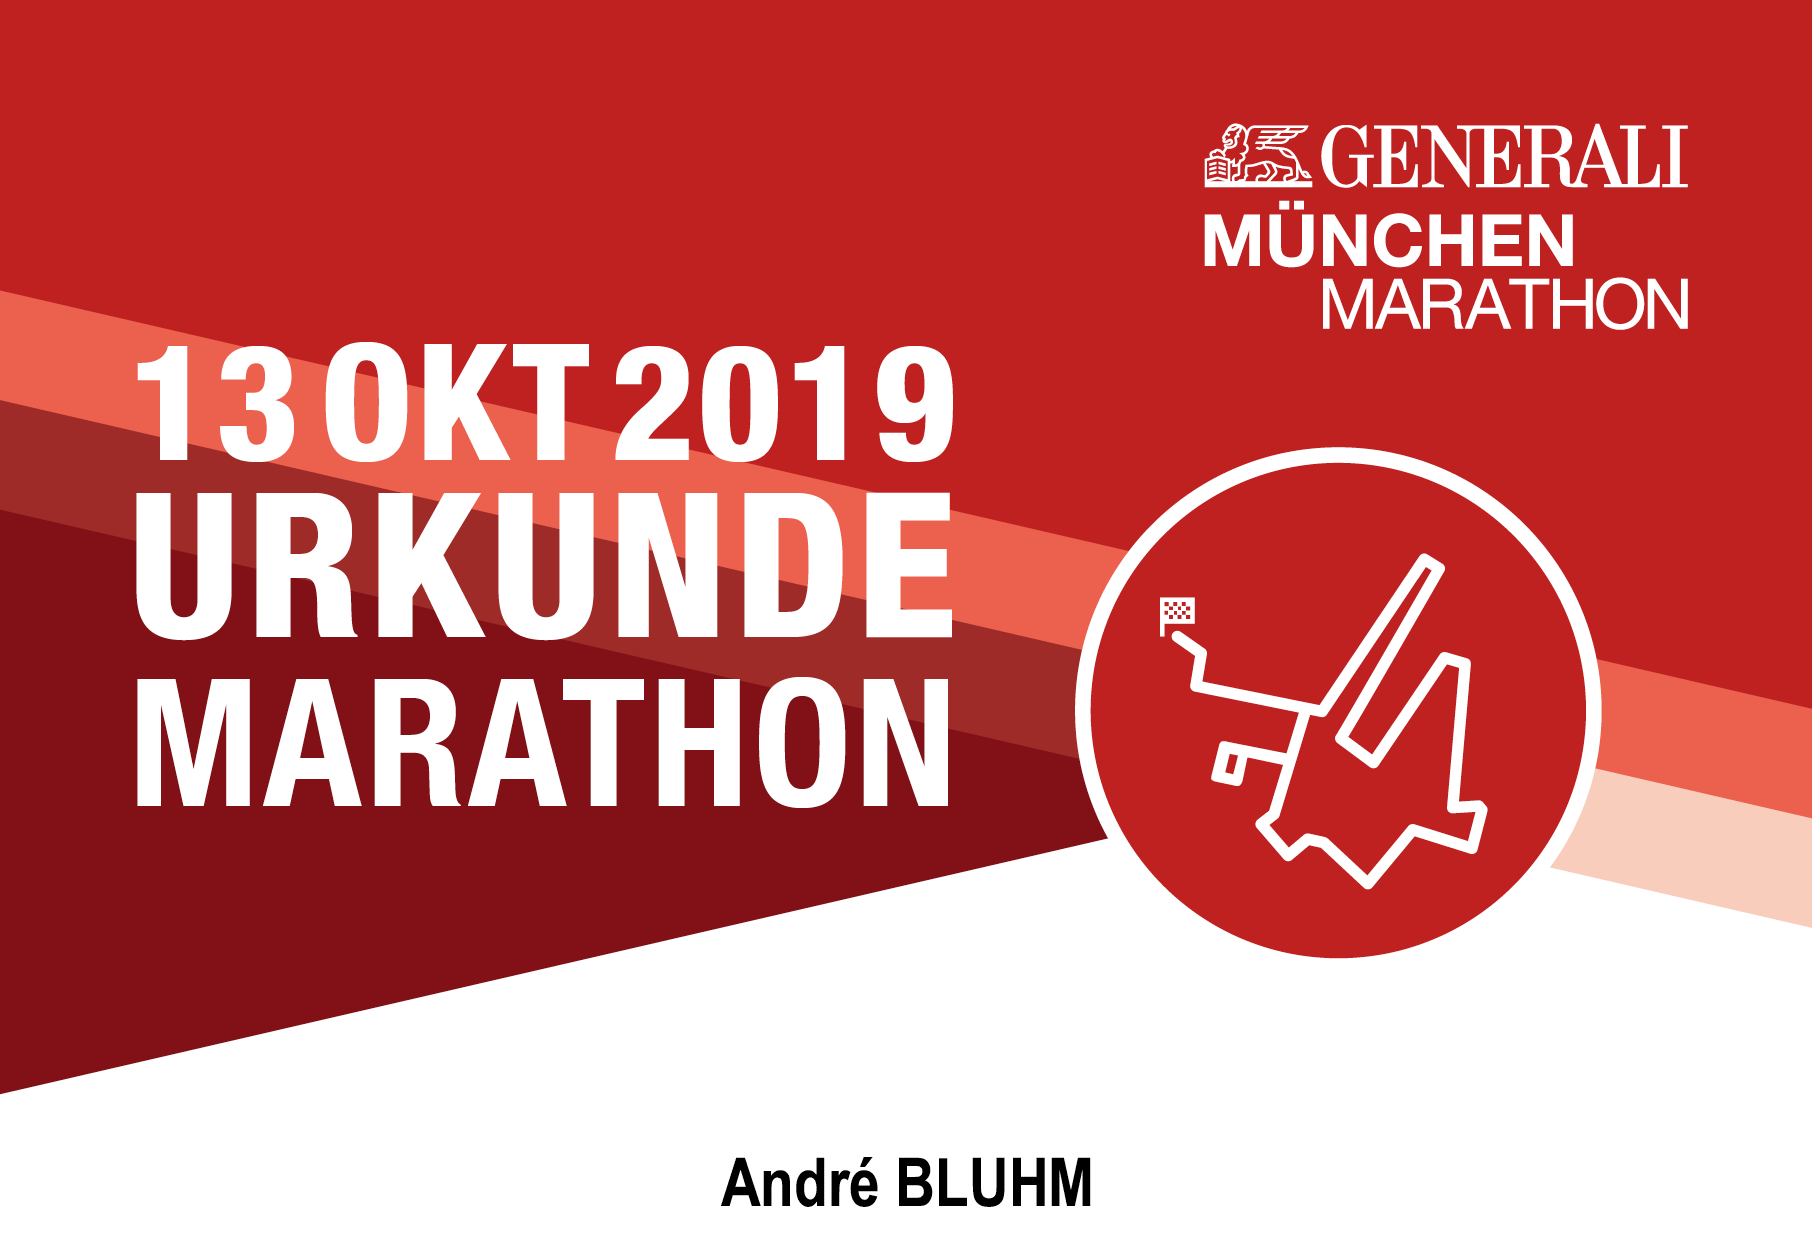 Generali Munich Marathon 2019